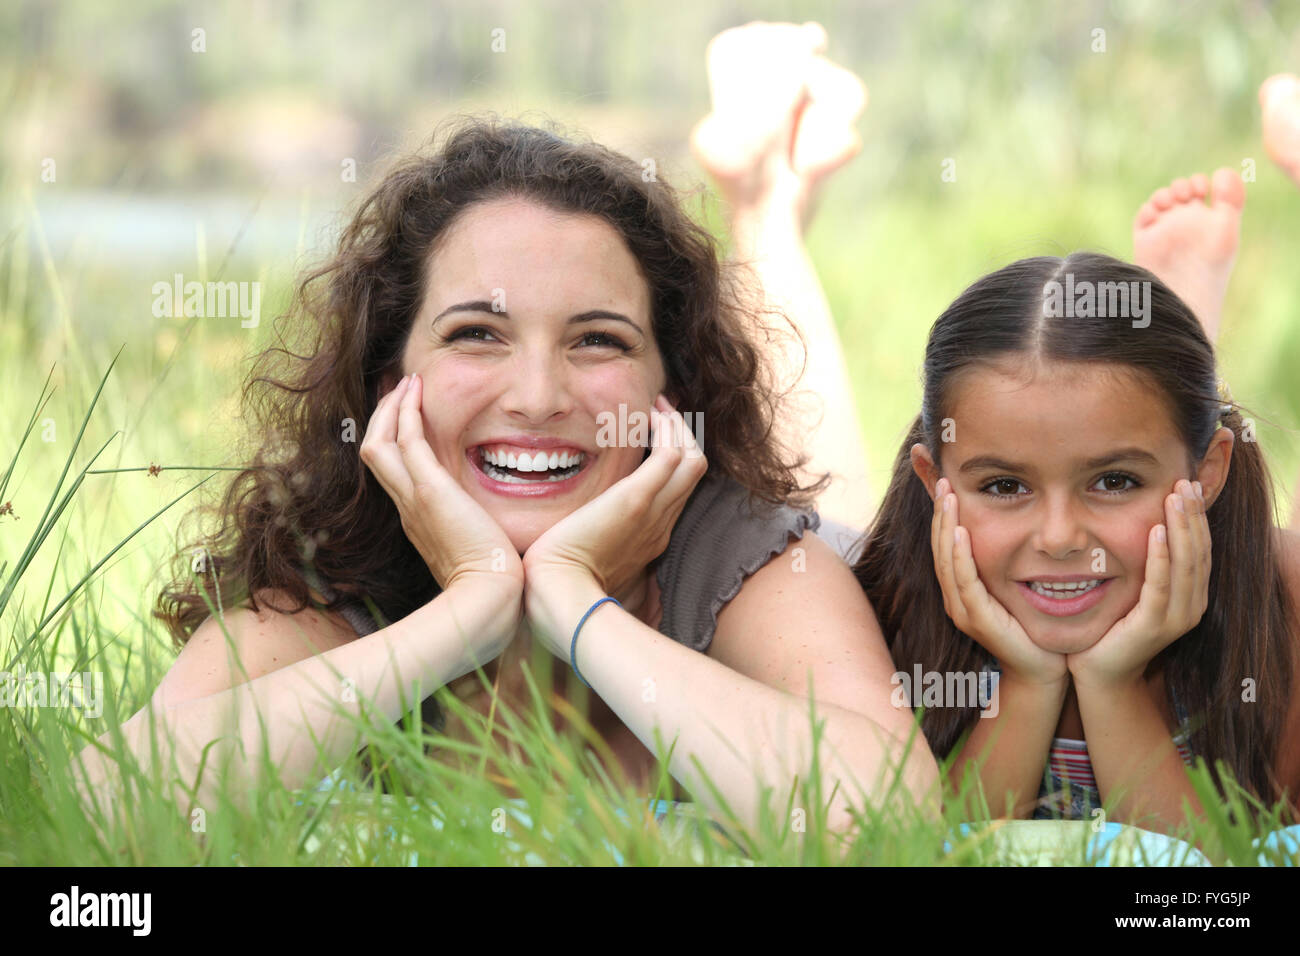 Una mujer y una niña acostada en la hierba Foto de stock